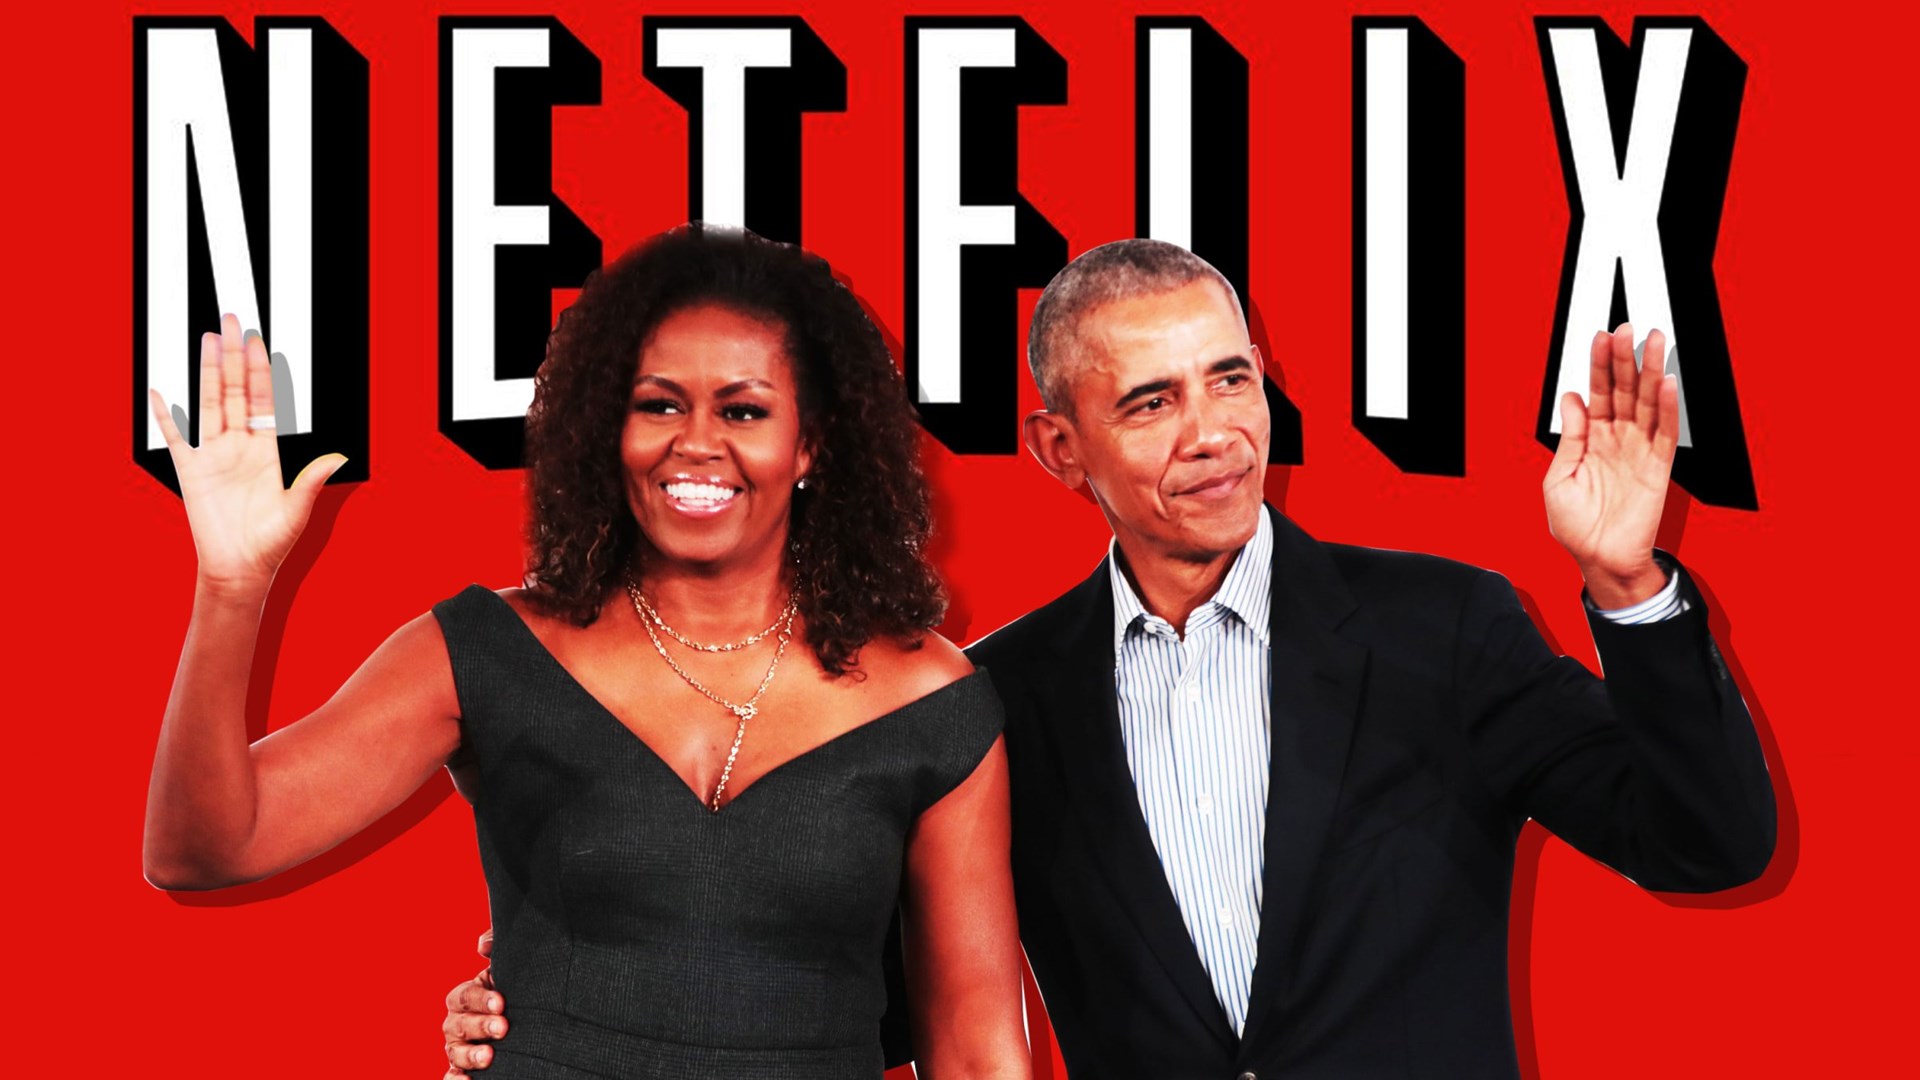 Μπαράκ και Μισέλ Ομπάμα στο Netflix με νέα σειρά κινουμένων σχεδίων